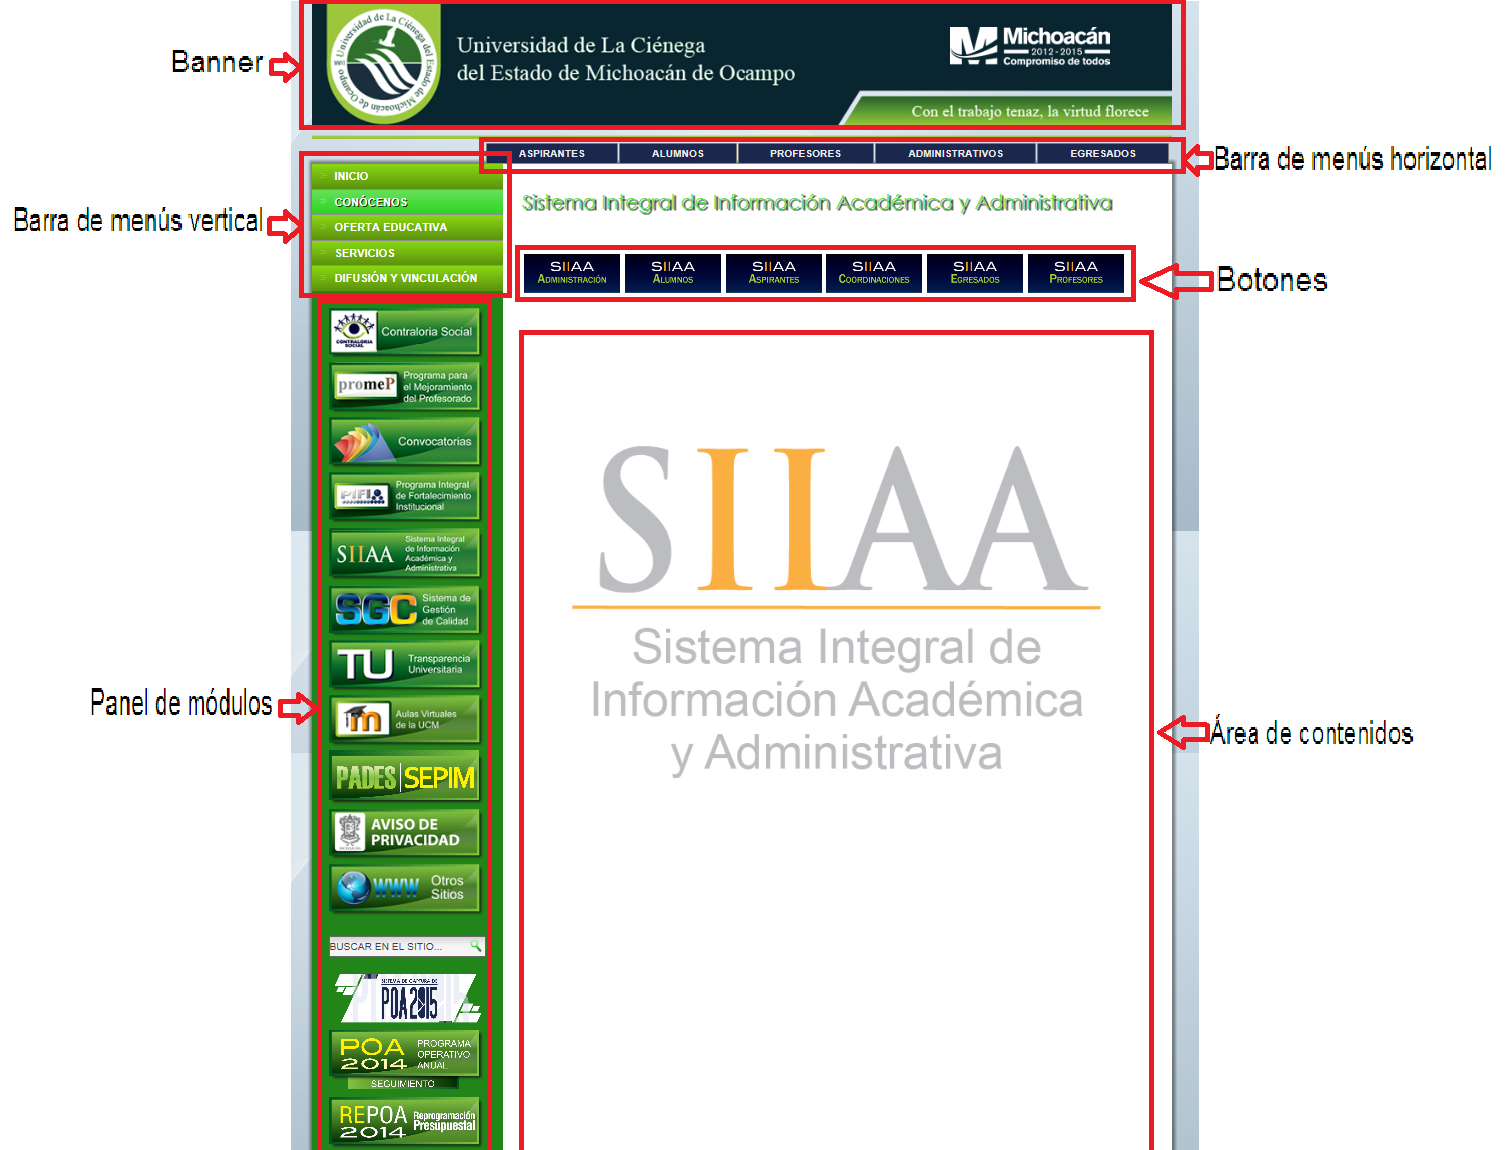 El propósito de este Manual es facilitar al usuario la operación de las diferentes pantallas de consulta de la información que se administra en el Sistema Integral de Información Académica y (SIIAA